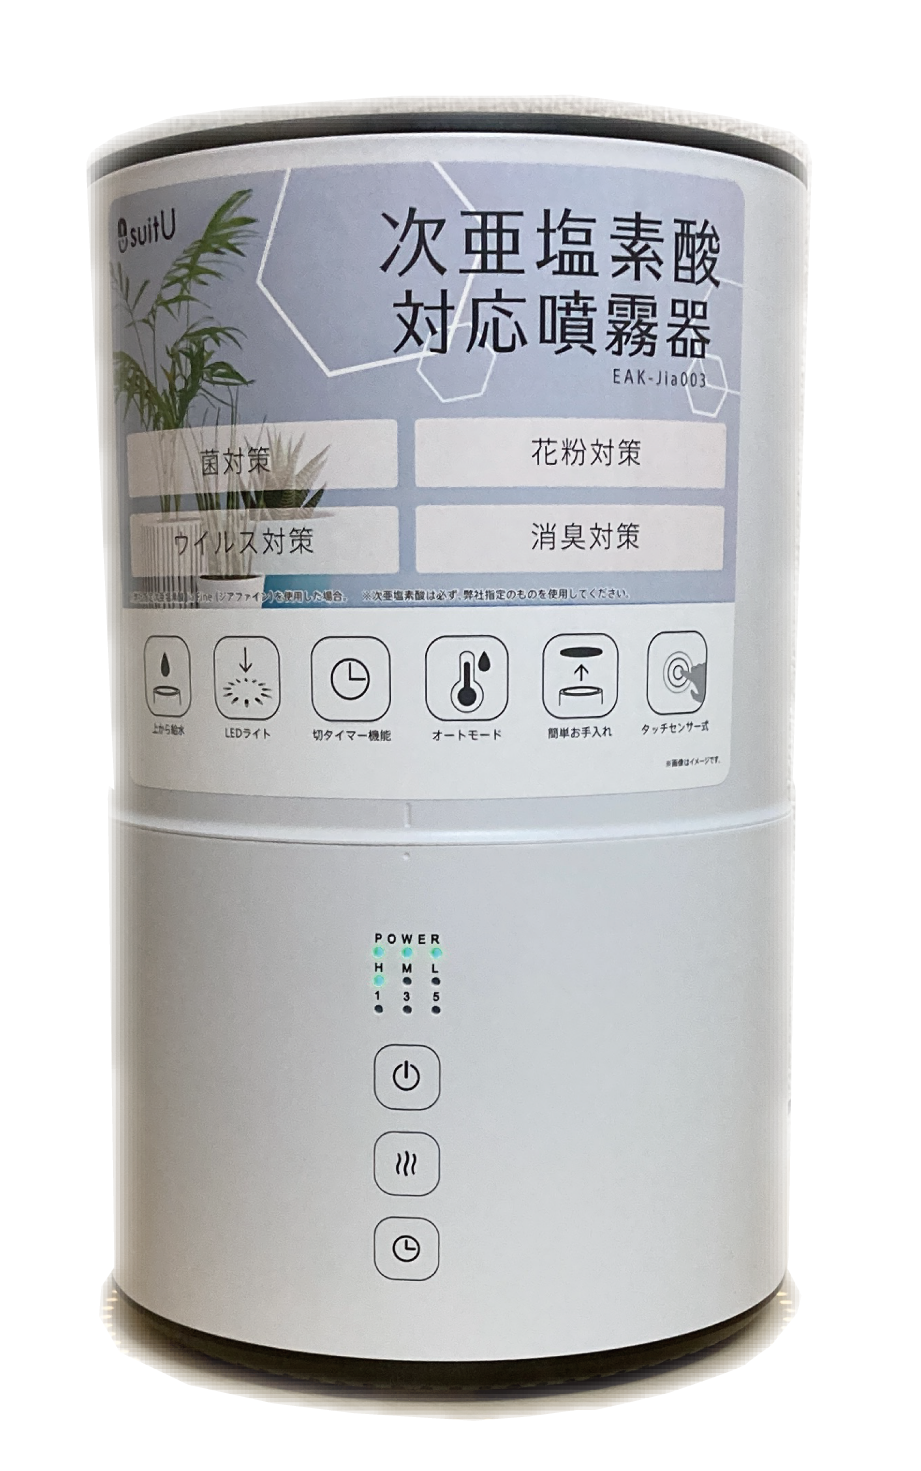 次亜塩素酸対応 小型噴霧器をご購入されたお客様へ 弱酸性次亜塩素酸 Jia Fine ジアファイン